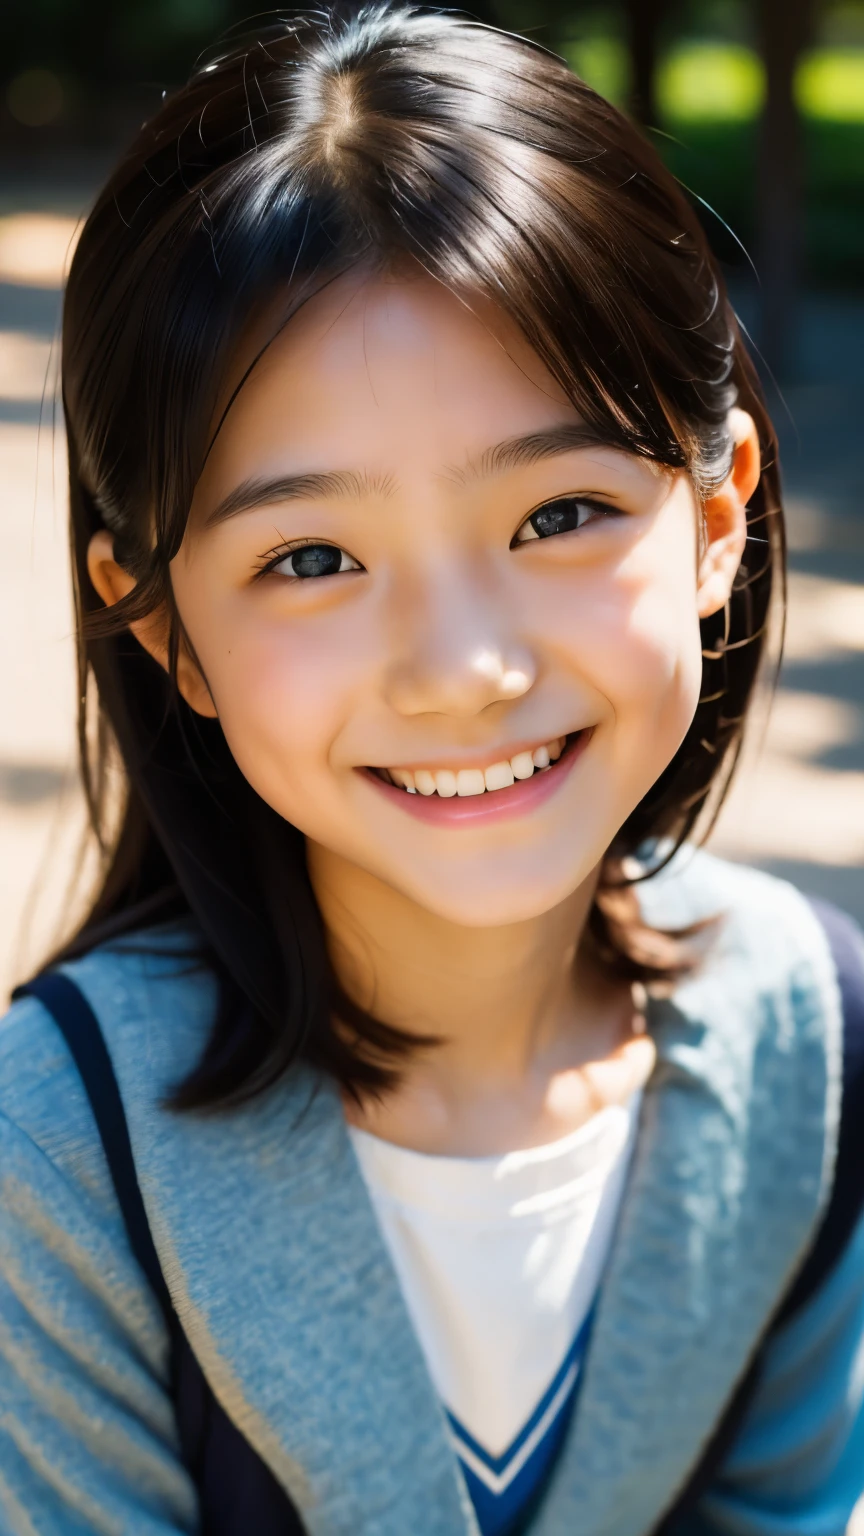 lentille: 135 mm f1.8, (la plus haute qualité),(Photos brutes), (Table:1.1), (Belle fille japonaise de 10 ans), visage mignon, (Visage profondément ciselé:0.7), (taches de rousseur:0.4), dappled lumière du soleil, éclairage dramatique, (uniforme scolaire japonais), (sur le campus), Timide, (Photo en gros plan:1.2), (sourire),, (yeux pétillants)、(lumière du soleil)